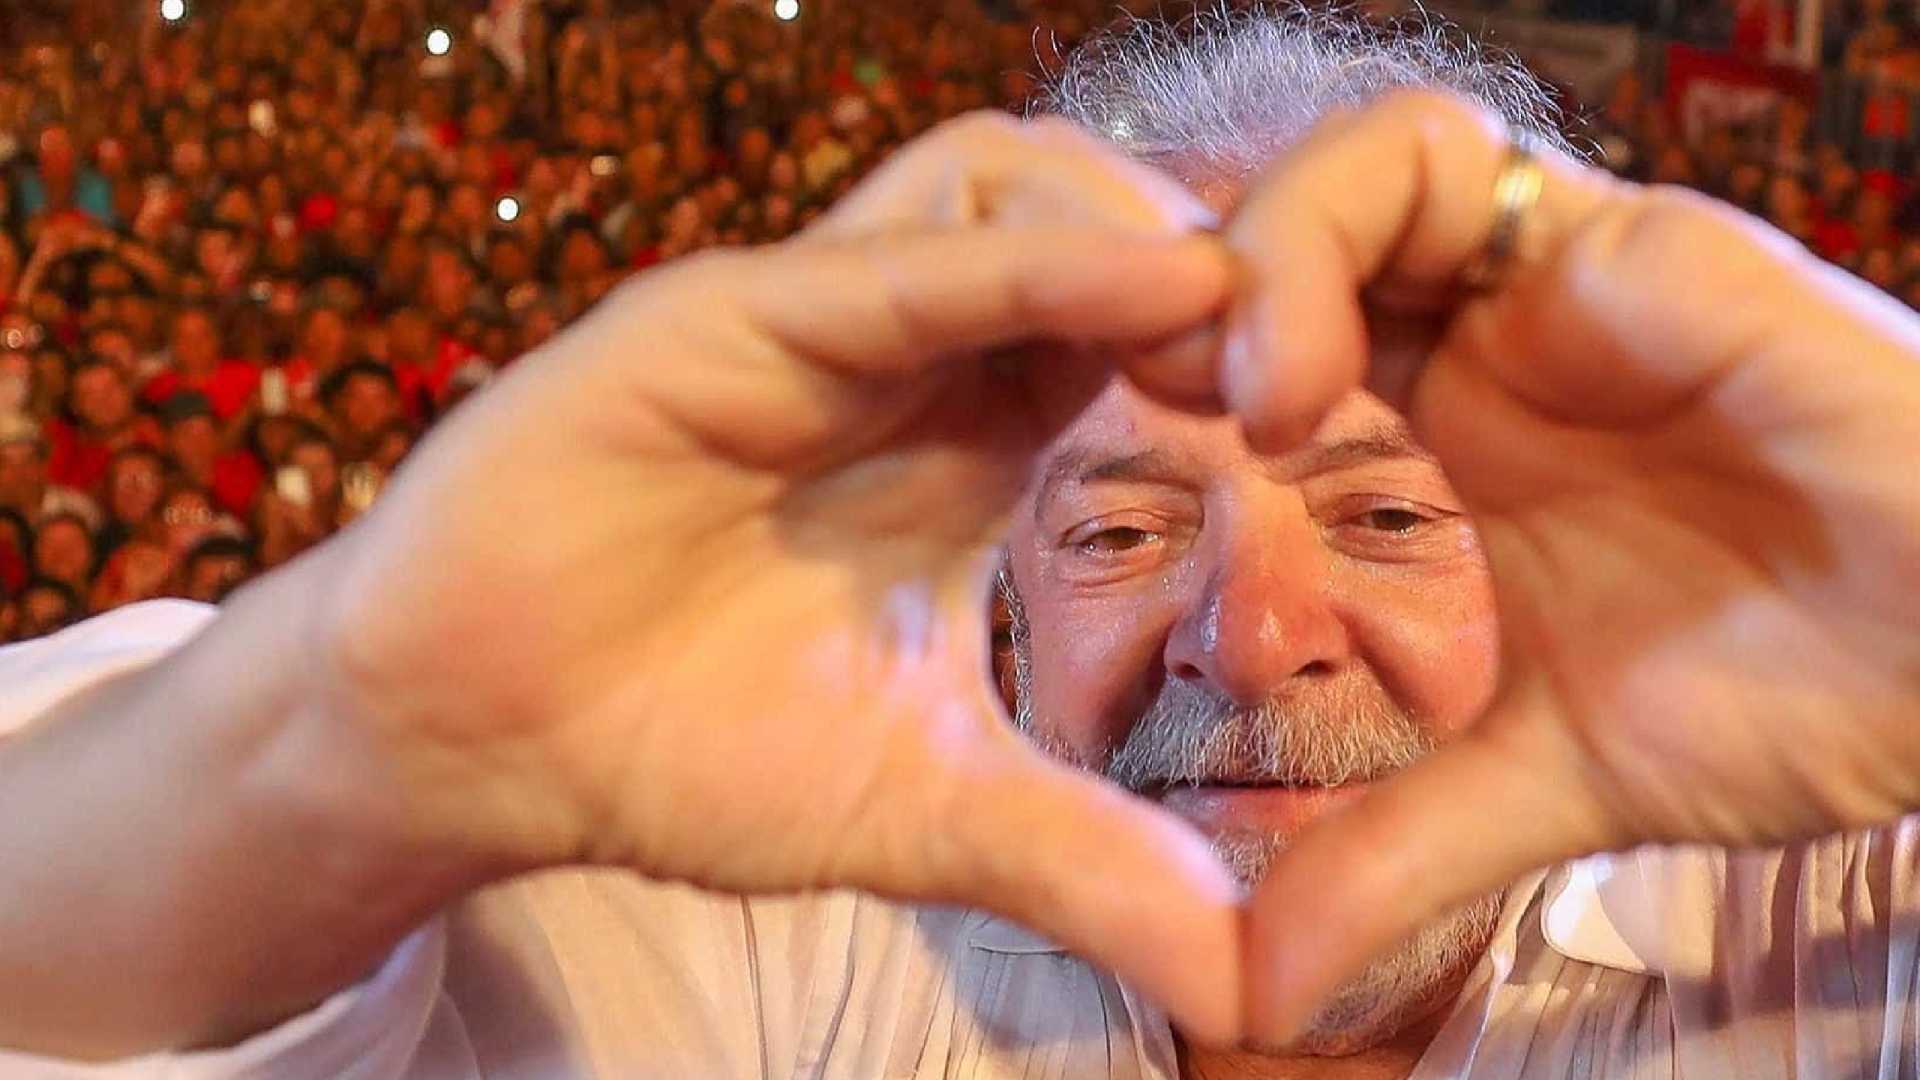 Lula sobe cinco pontos e lidera intenções de voto para 2018